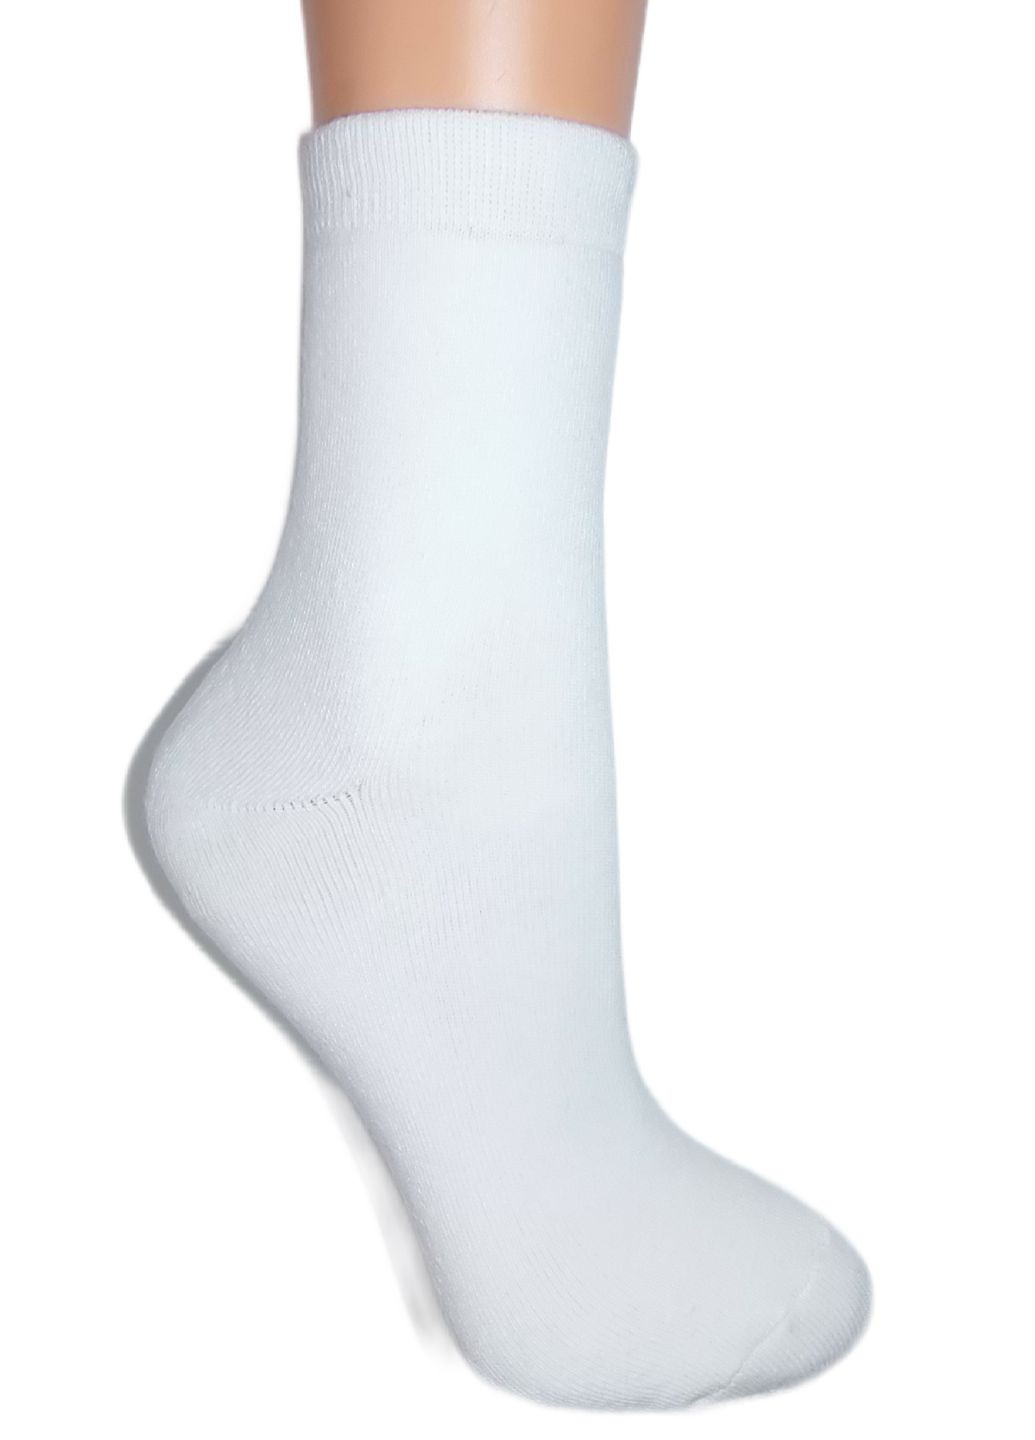 Шкарпетки плюш (махра) ТМ "Нова пара" 138 НОВА ПАРА середня висота (266493577)